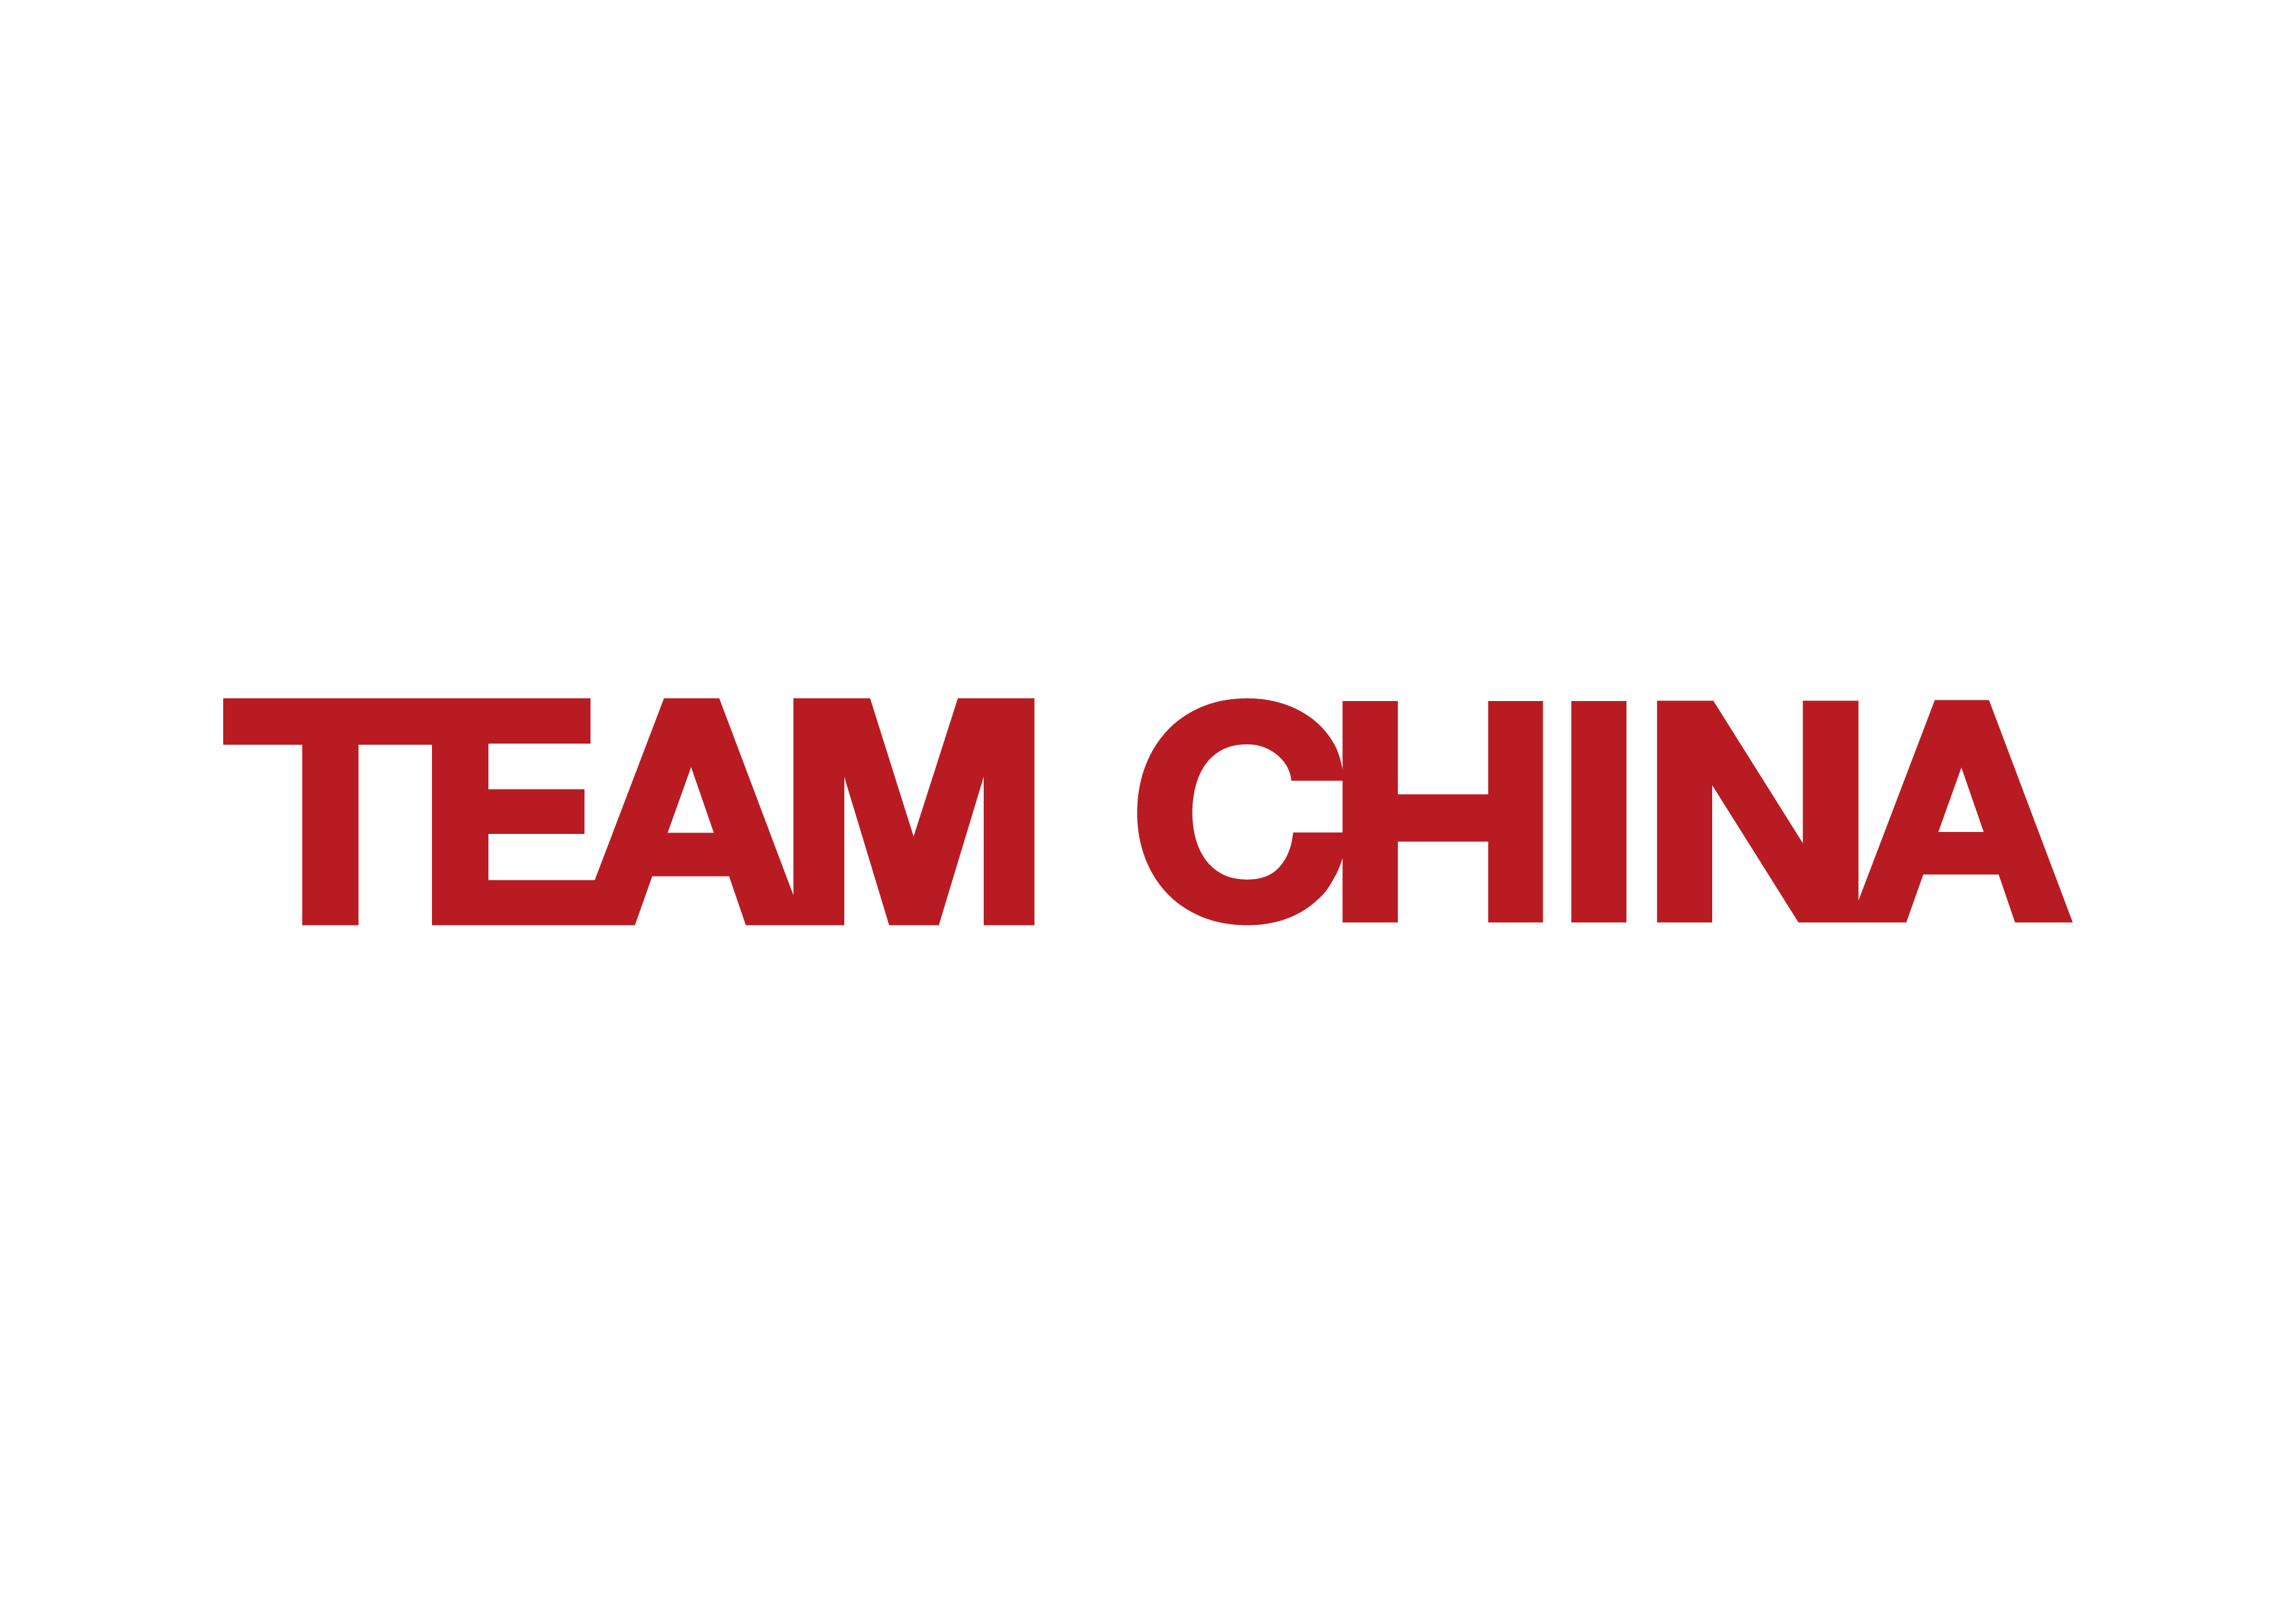 TEAM CHINA 横版（logo希望多露出横版的形式）.png